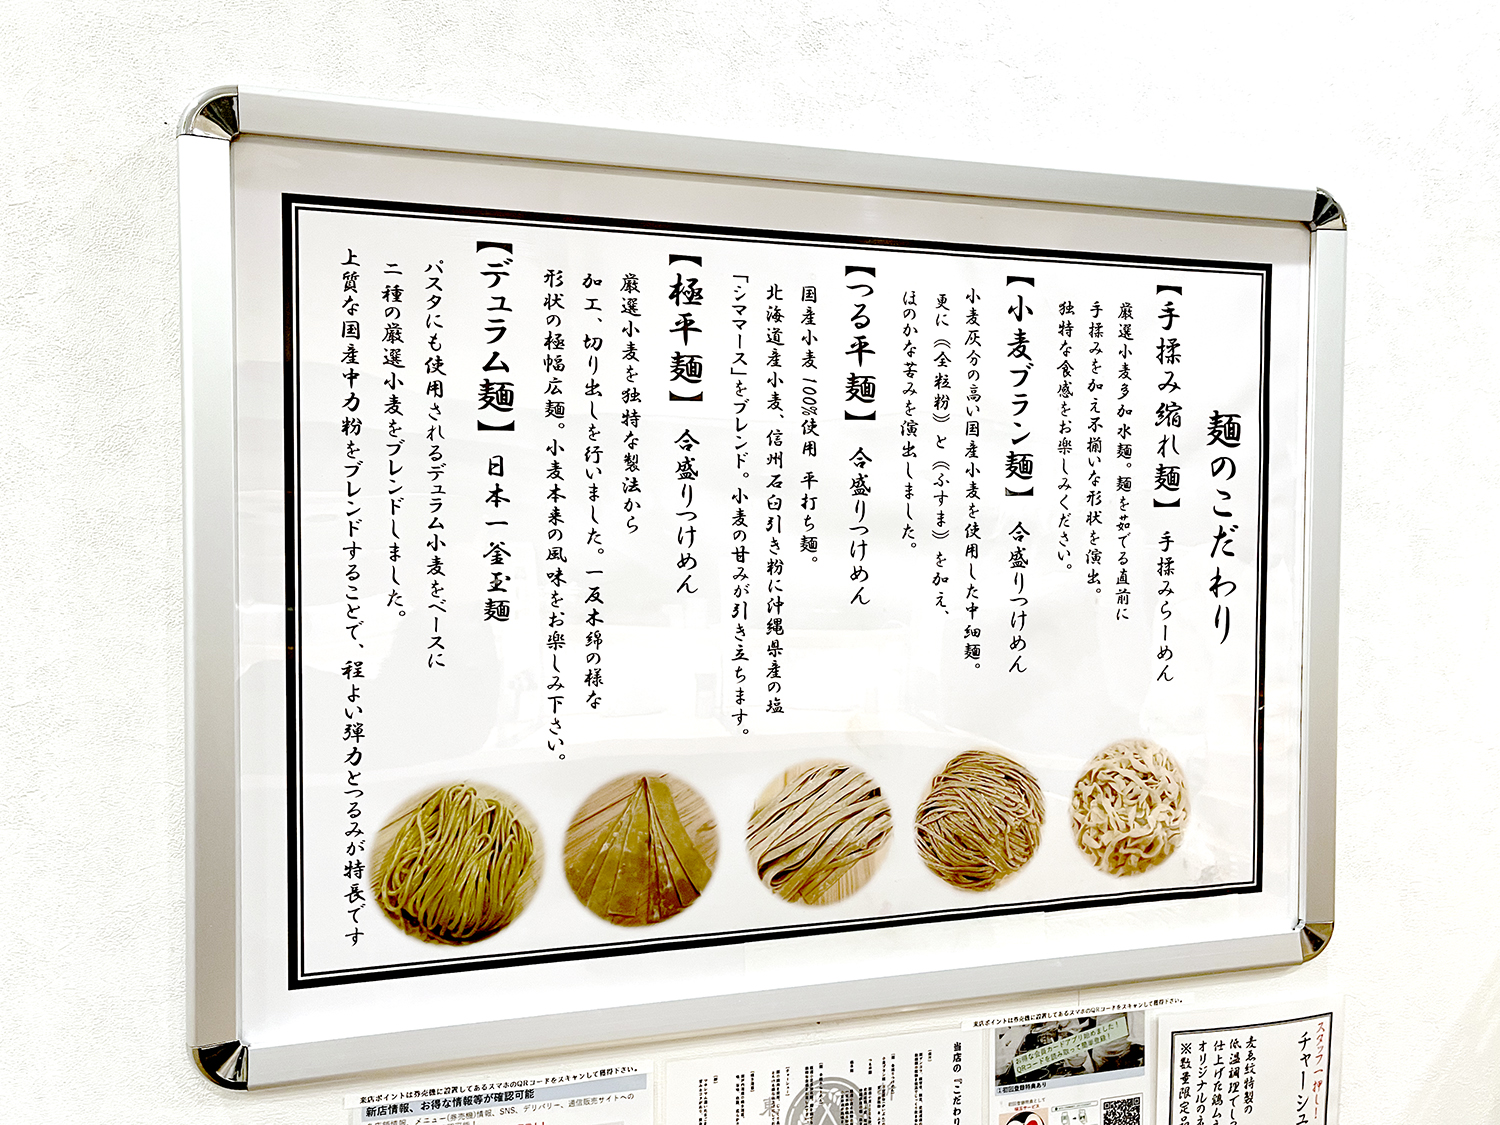 オリジナル麺は5種。「菅野製麺さんとかなり試行錯誤して、プライベートブランドとして麺を作ってもらいました」と田内さん。